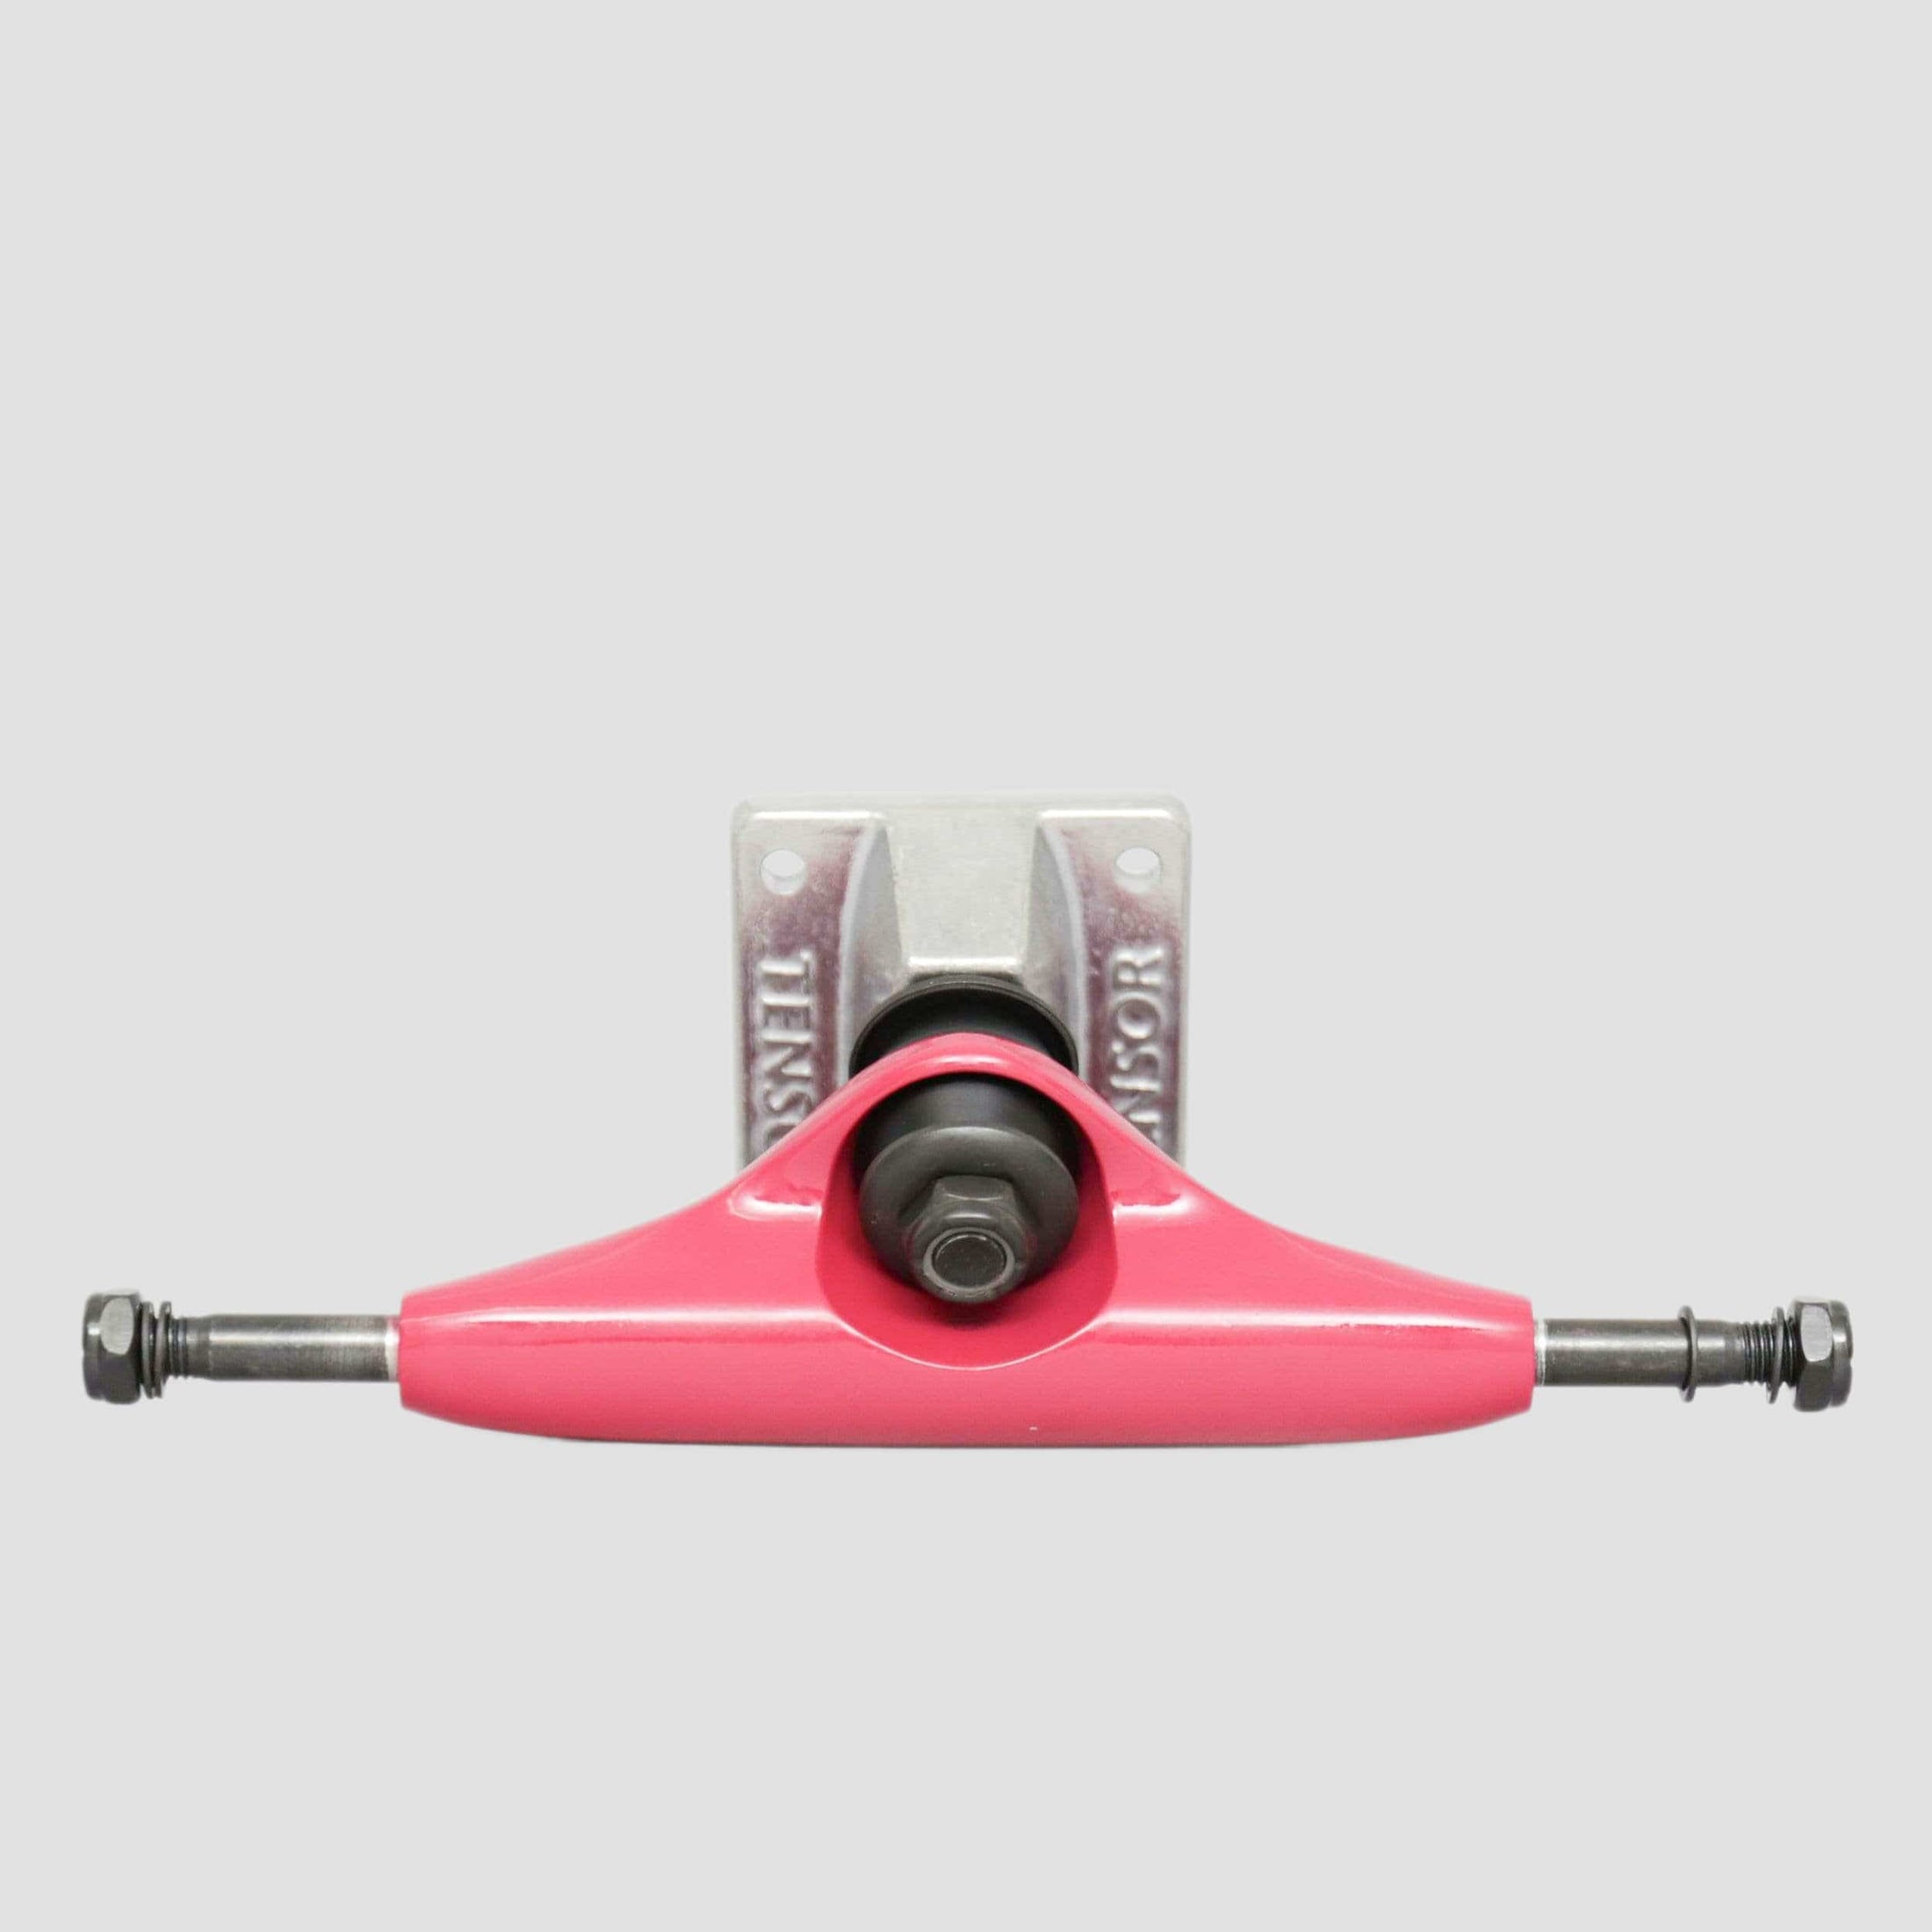 Tensor 5.25 Alloy Skateboard Trucks Crimson / Raw (Pair)